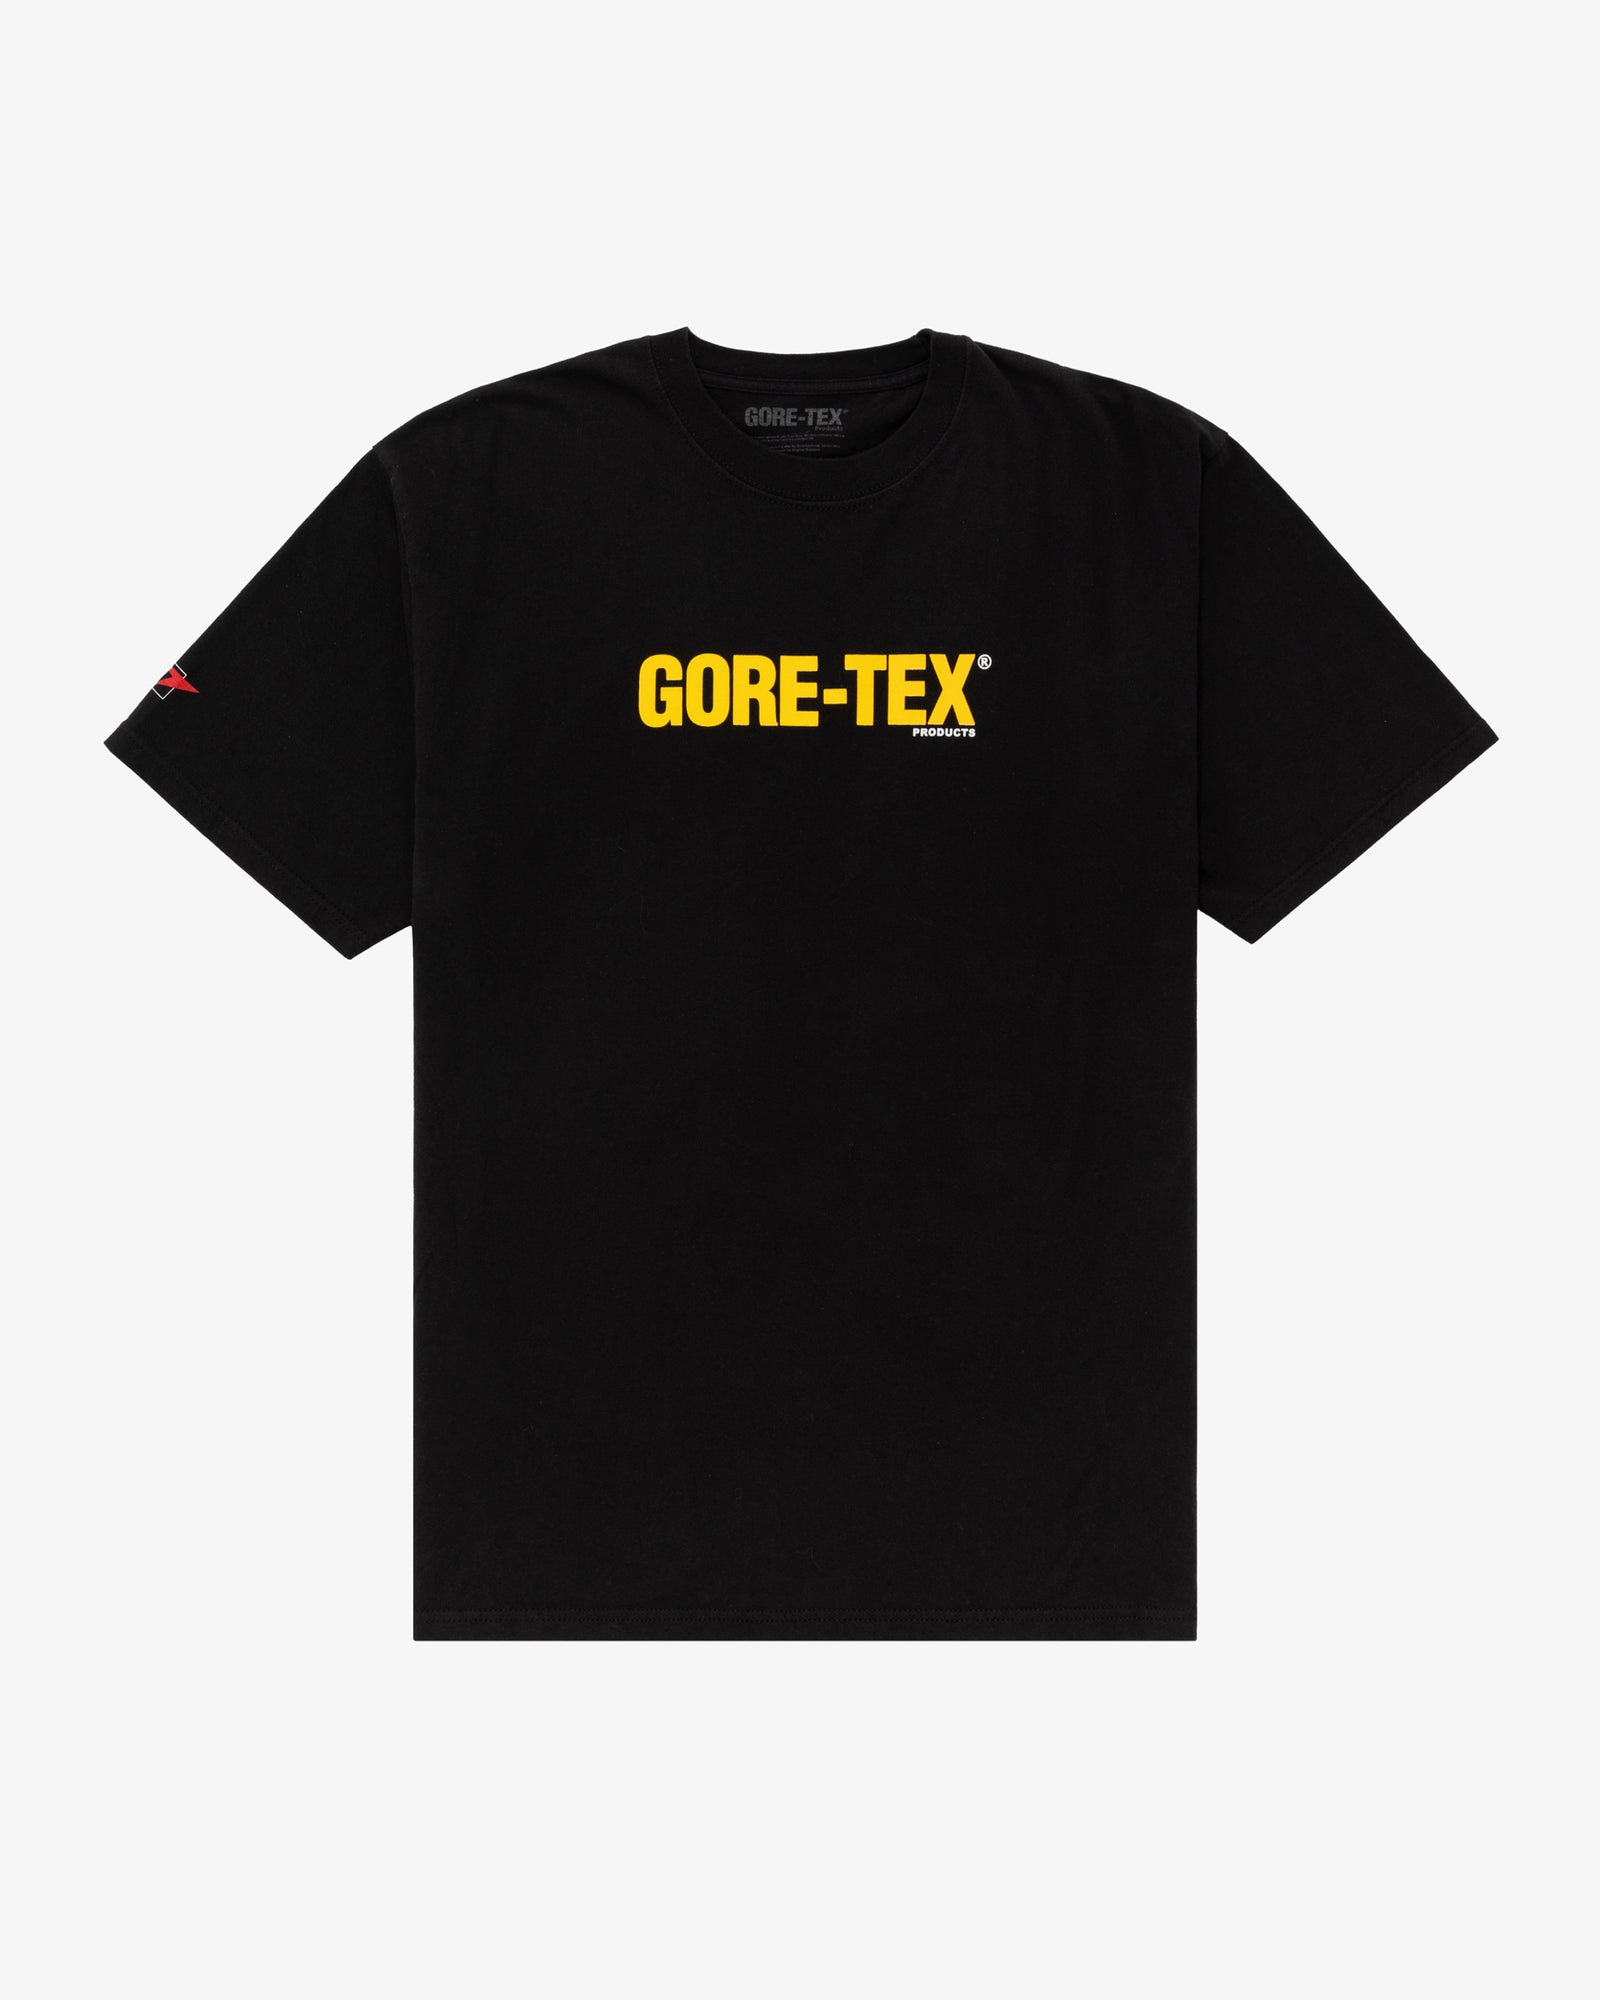 Vintage Gore-Tex Tee